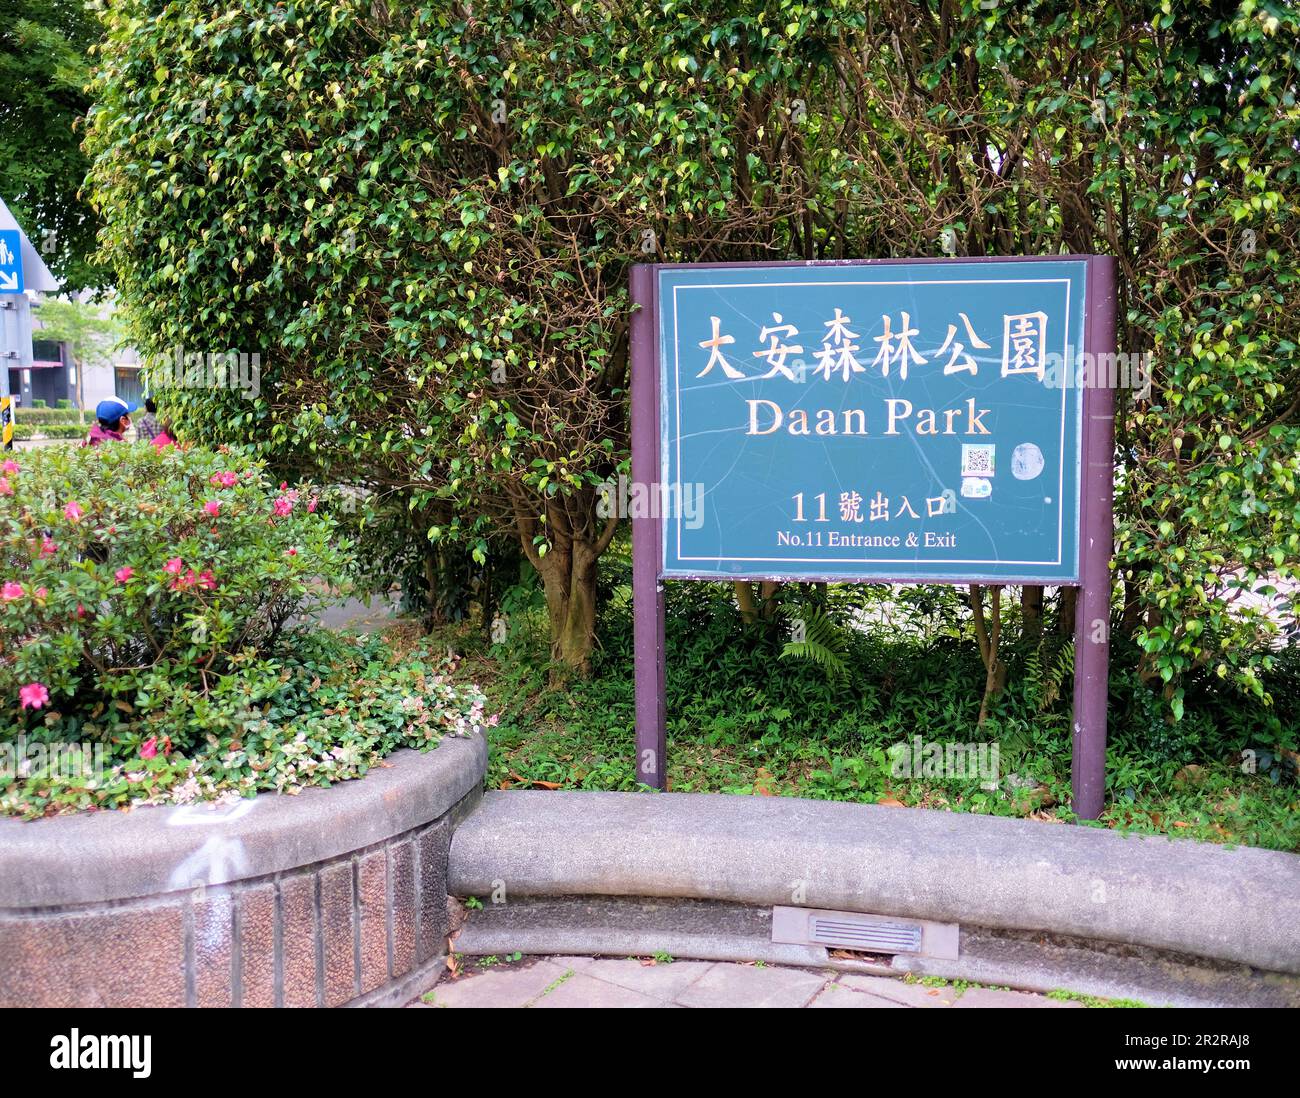 Panneau d'entrée et de sortie bilingue anglais et chinois au Da'an Park à Taipei, Taiwan, ROC; parc public, site récréatif. Banque D'Images